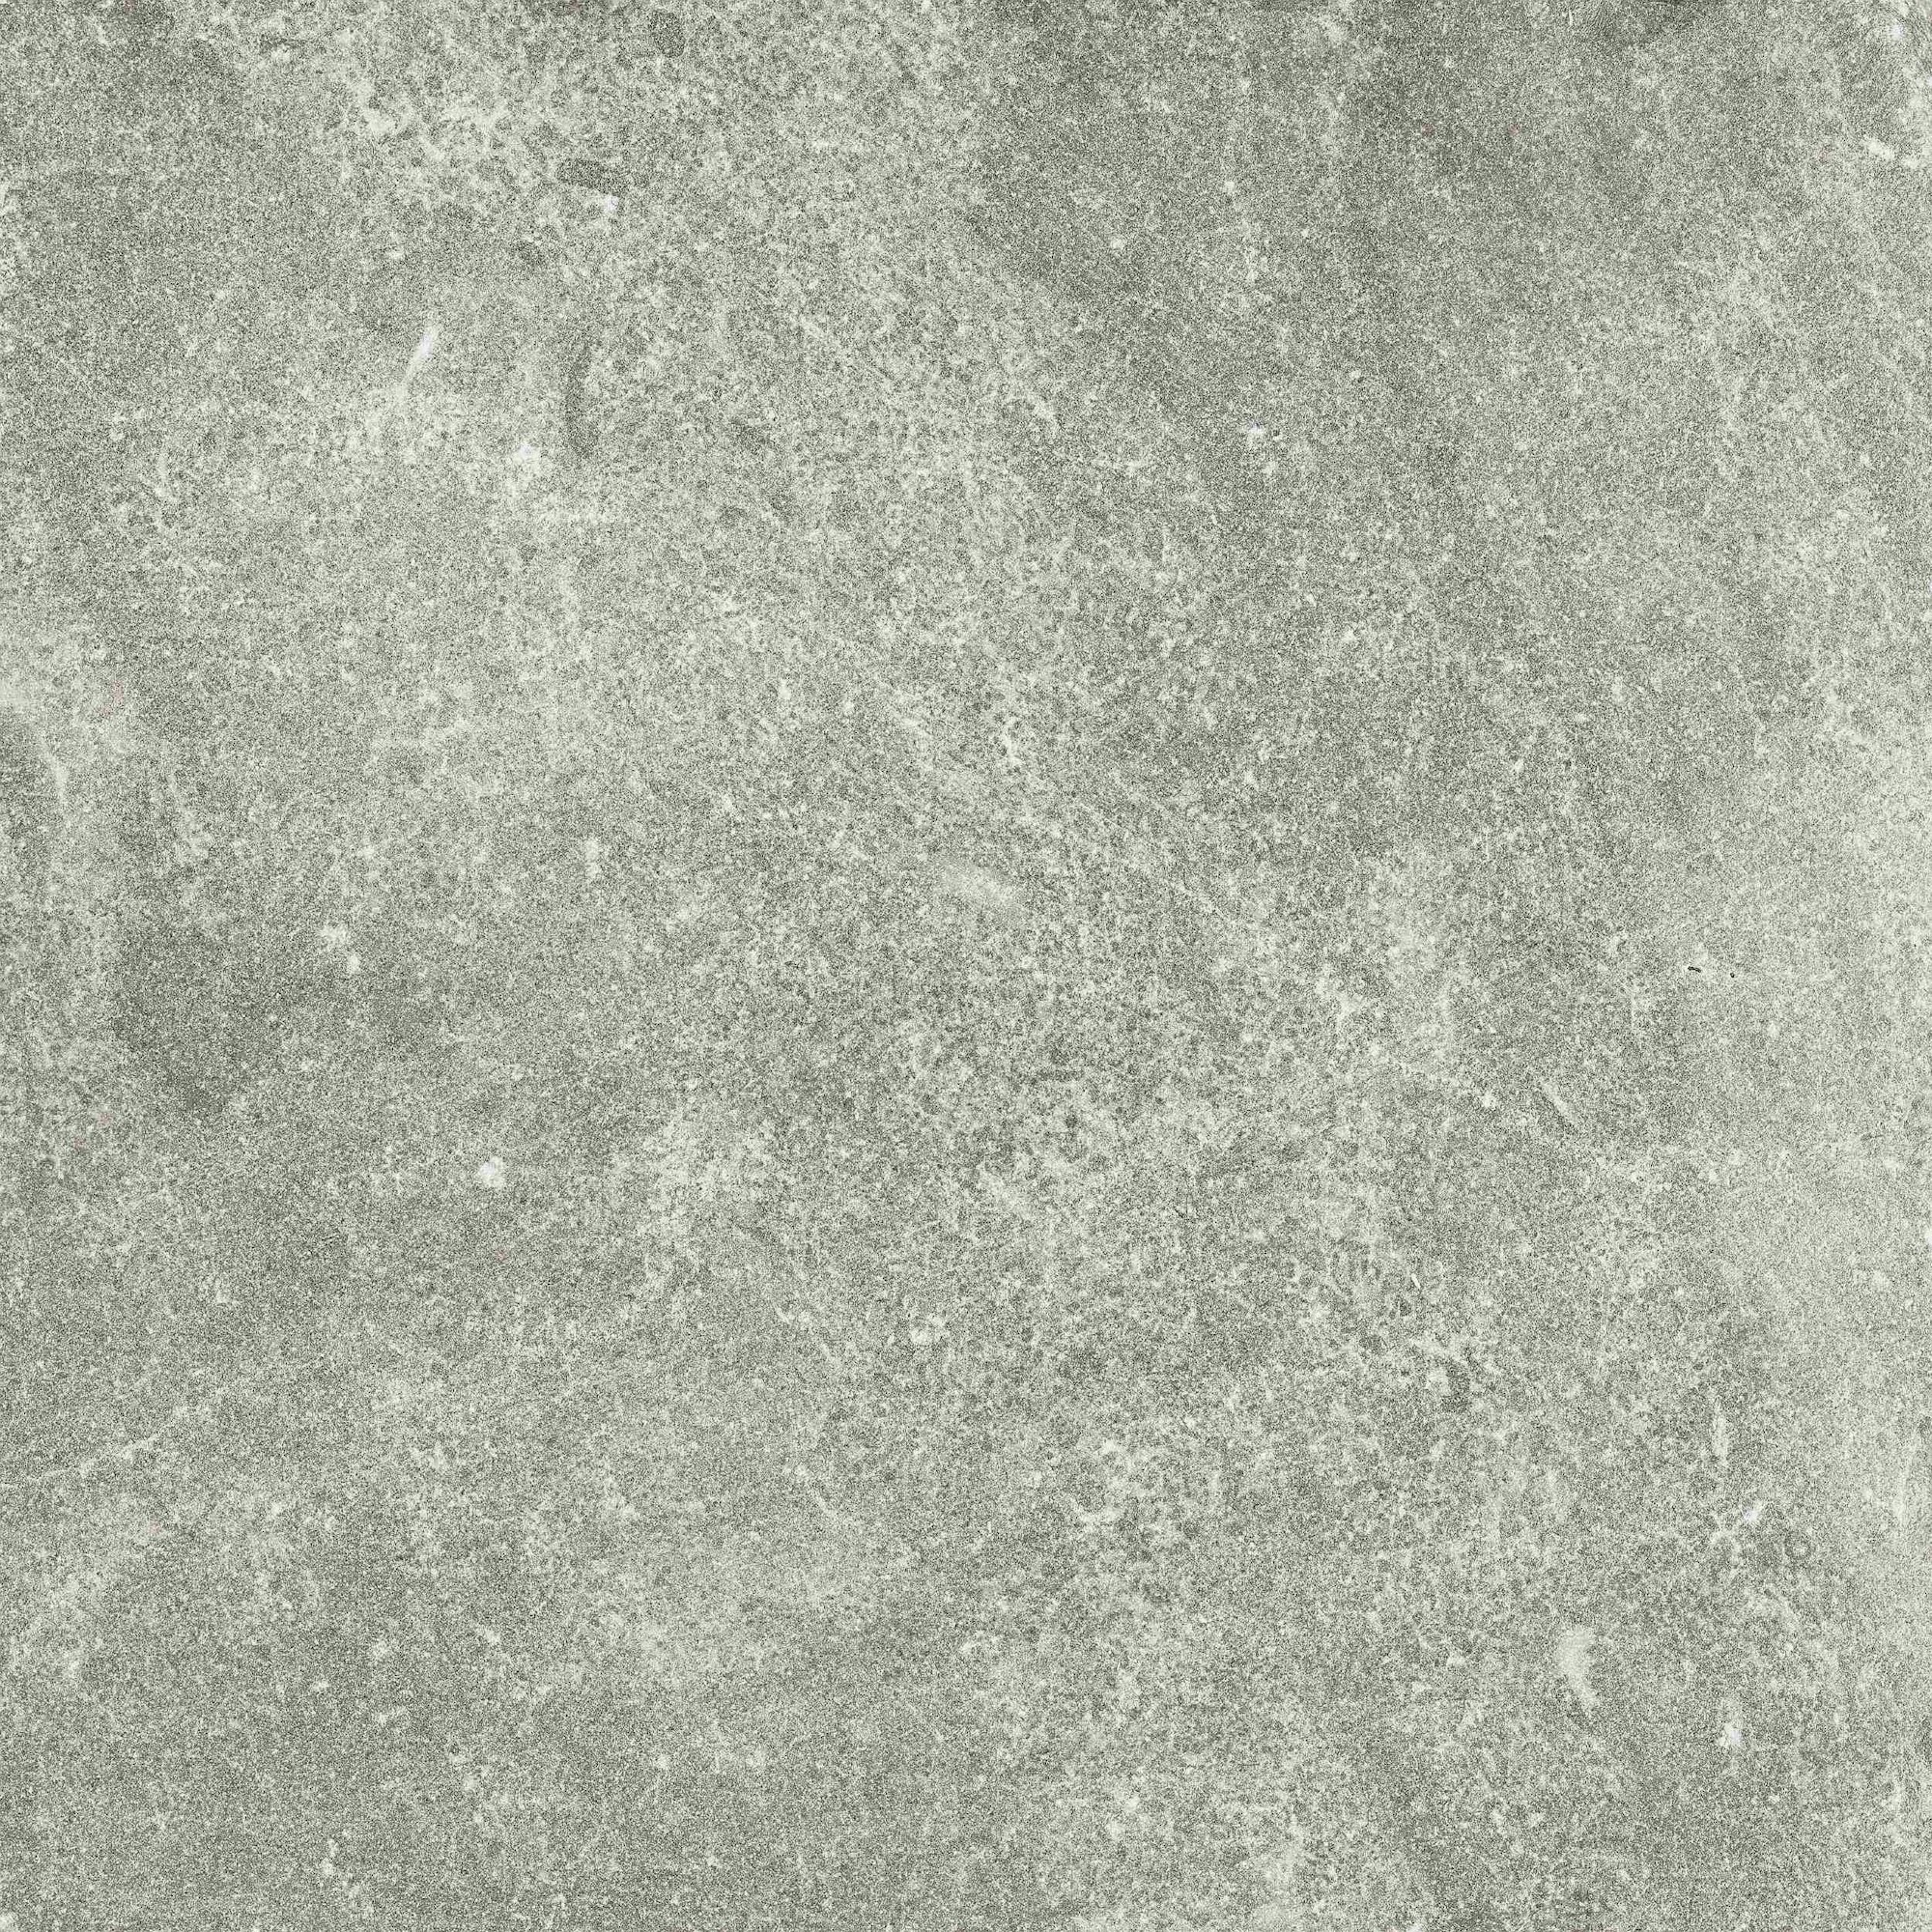 Eternal Grey 1000x1000x20mm Outdoor Tile